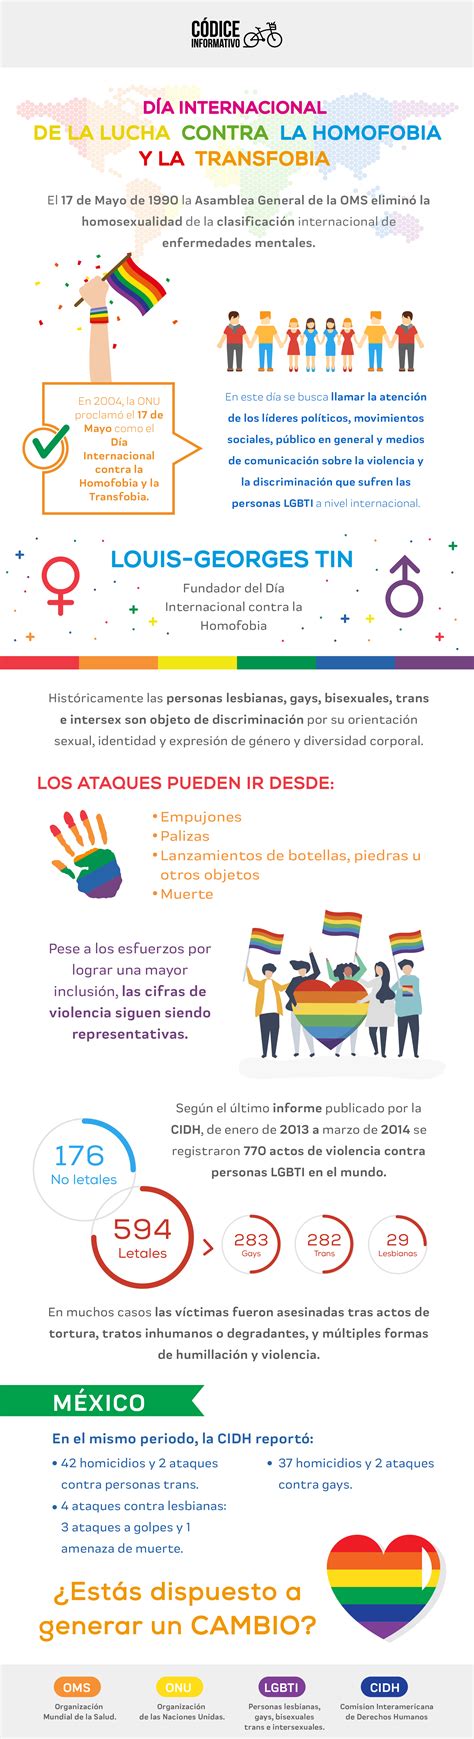 Hoy se conmemora el día internacional contra la homofobia, transfobia y bifobia. Día internacional de la lucha contra la homofobia y la ...